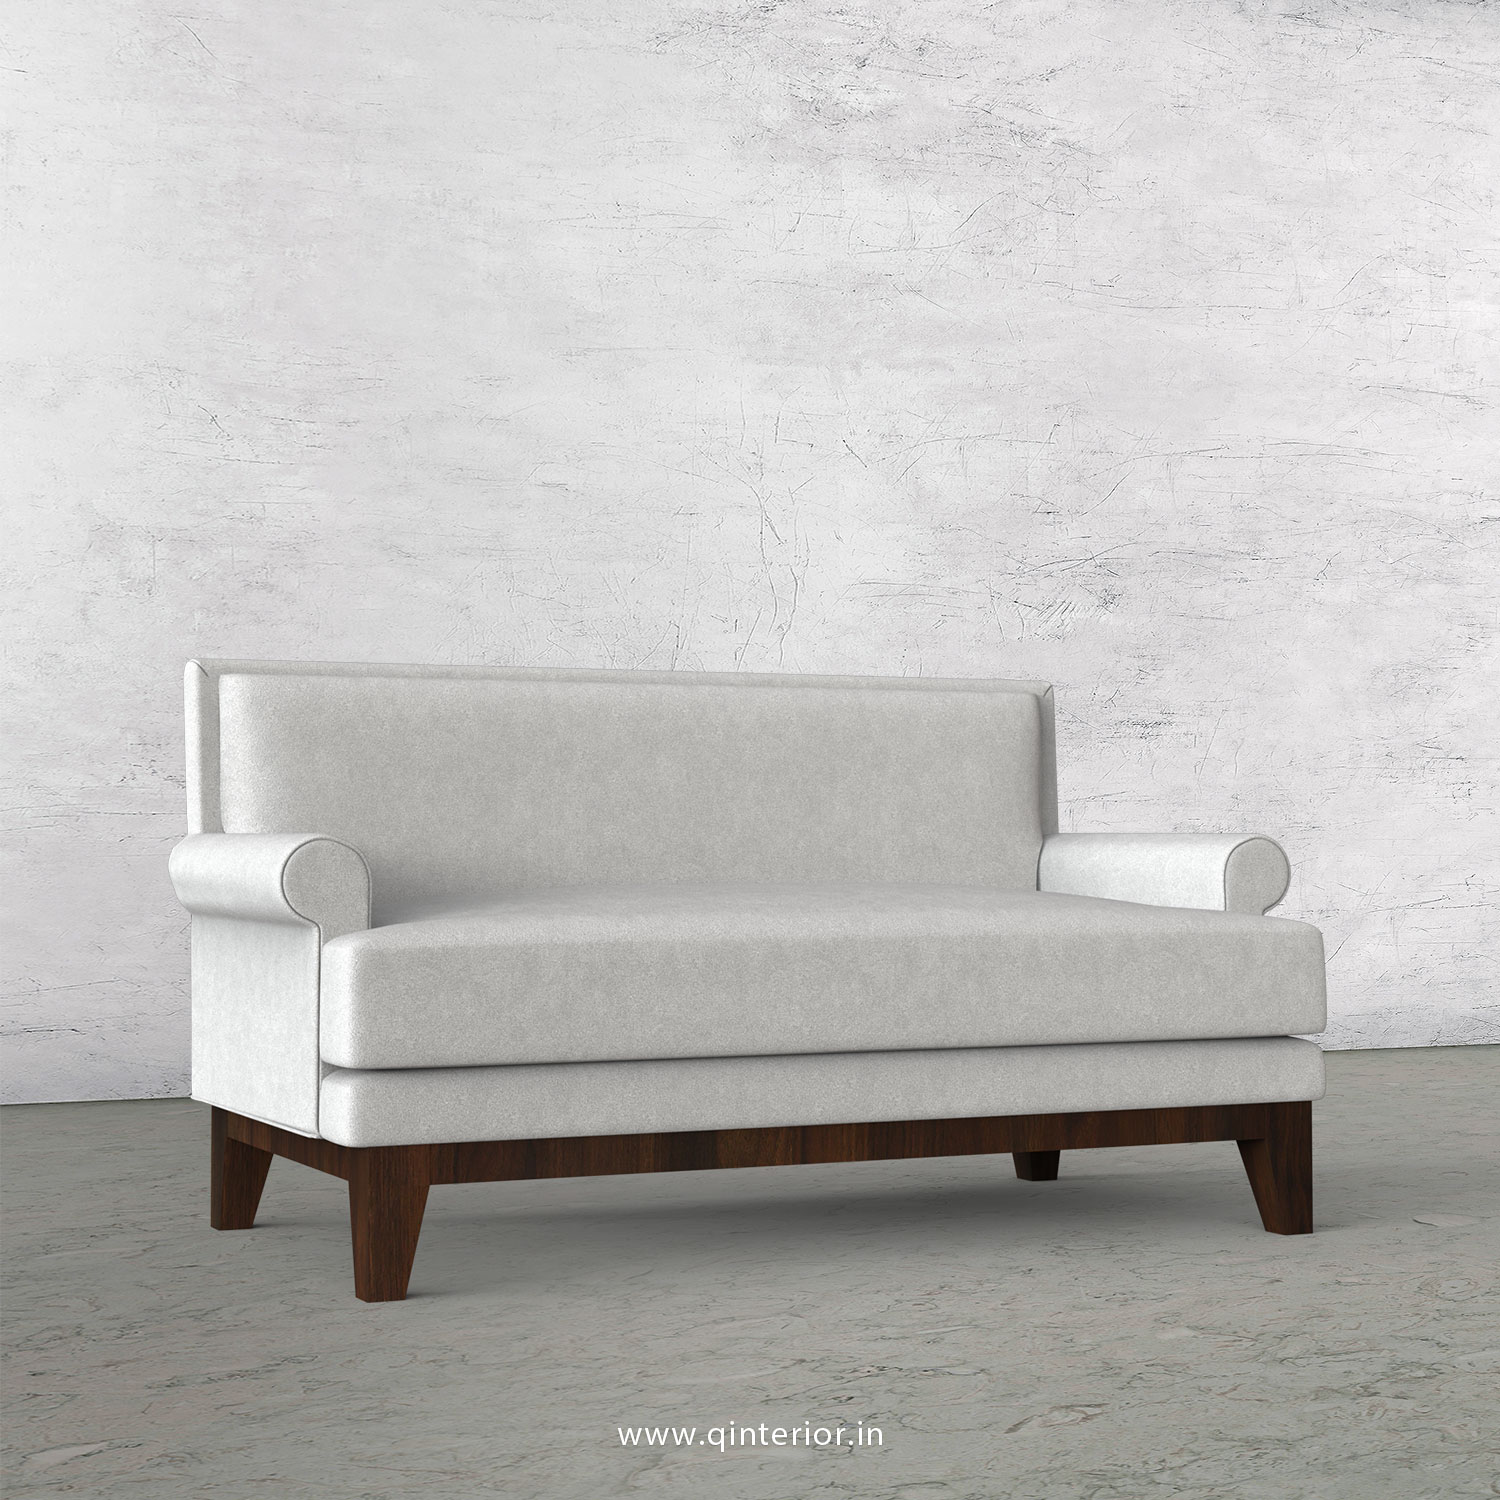 Aviana 2 Seater Sofa in Velvet Fabric - SFA001 VL06